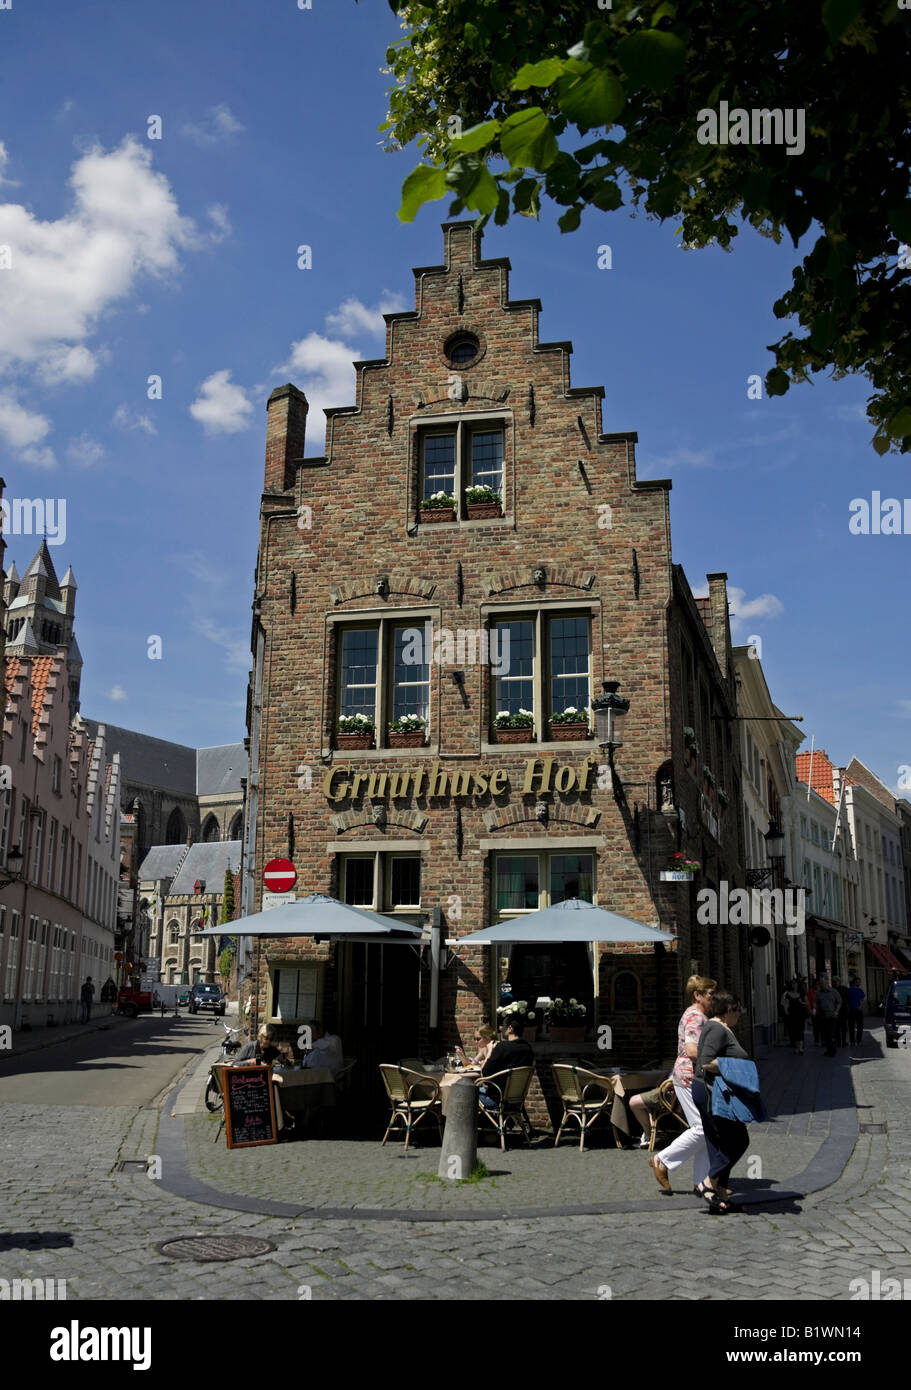 Gruuthuse Hof, Bruges Belgium, Flanders, Europe Stock Photo